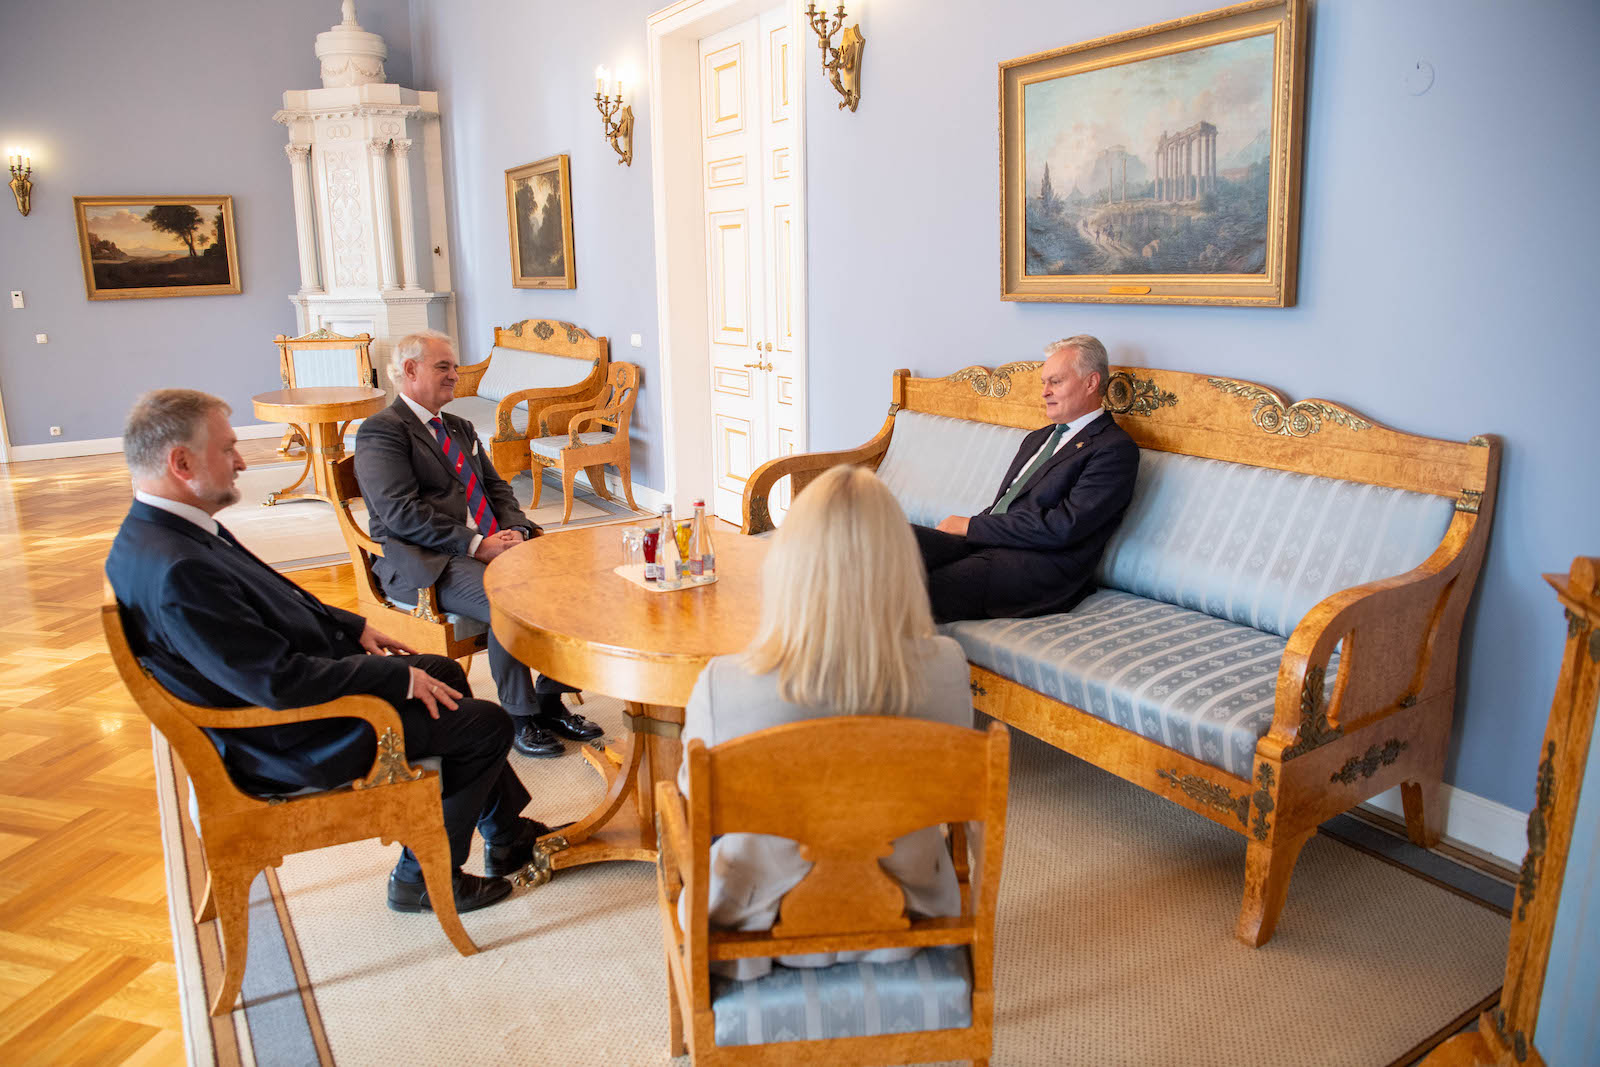 Der neue Botschafter des Malteserordens in Litauen legt seine Beglaubigungsschreiben vor